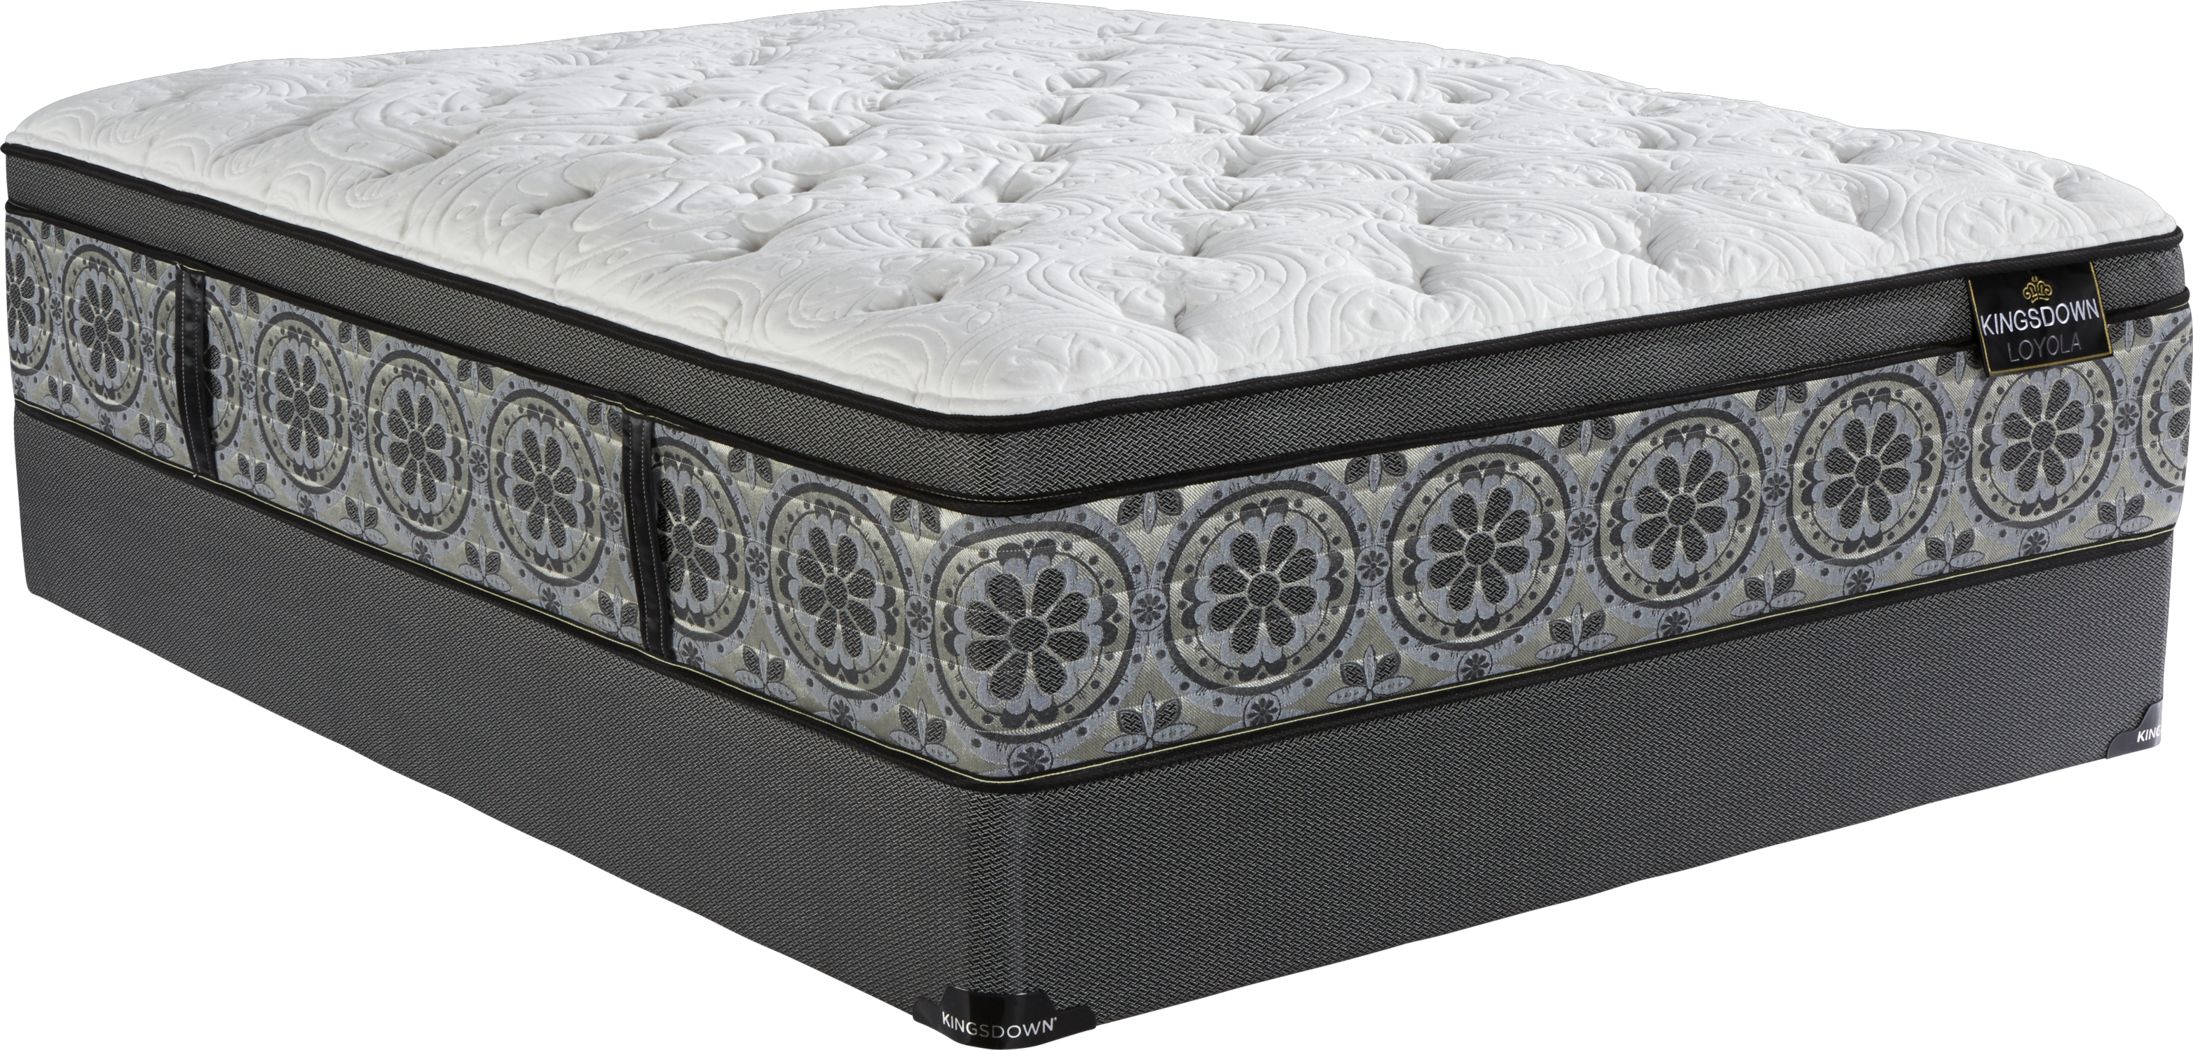 kingsdown kamaria queen mattress